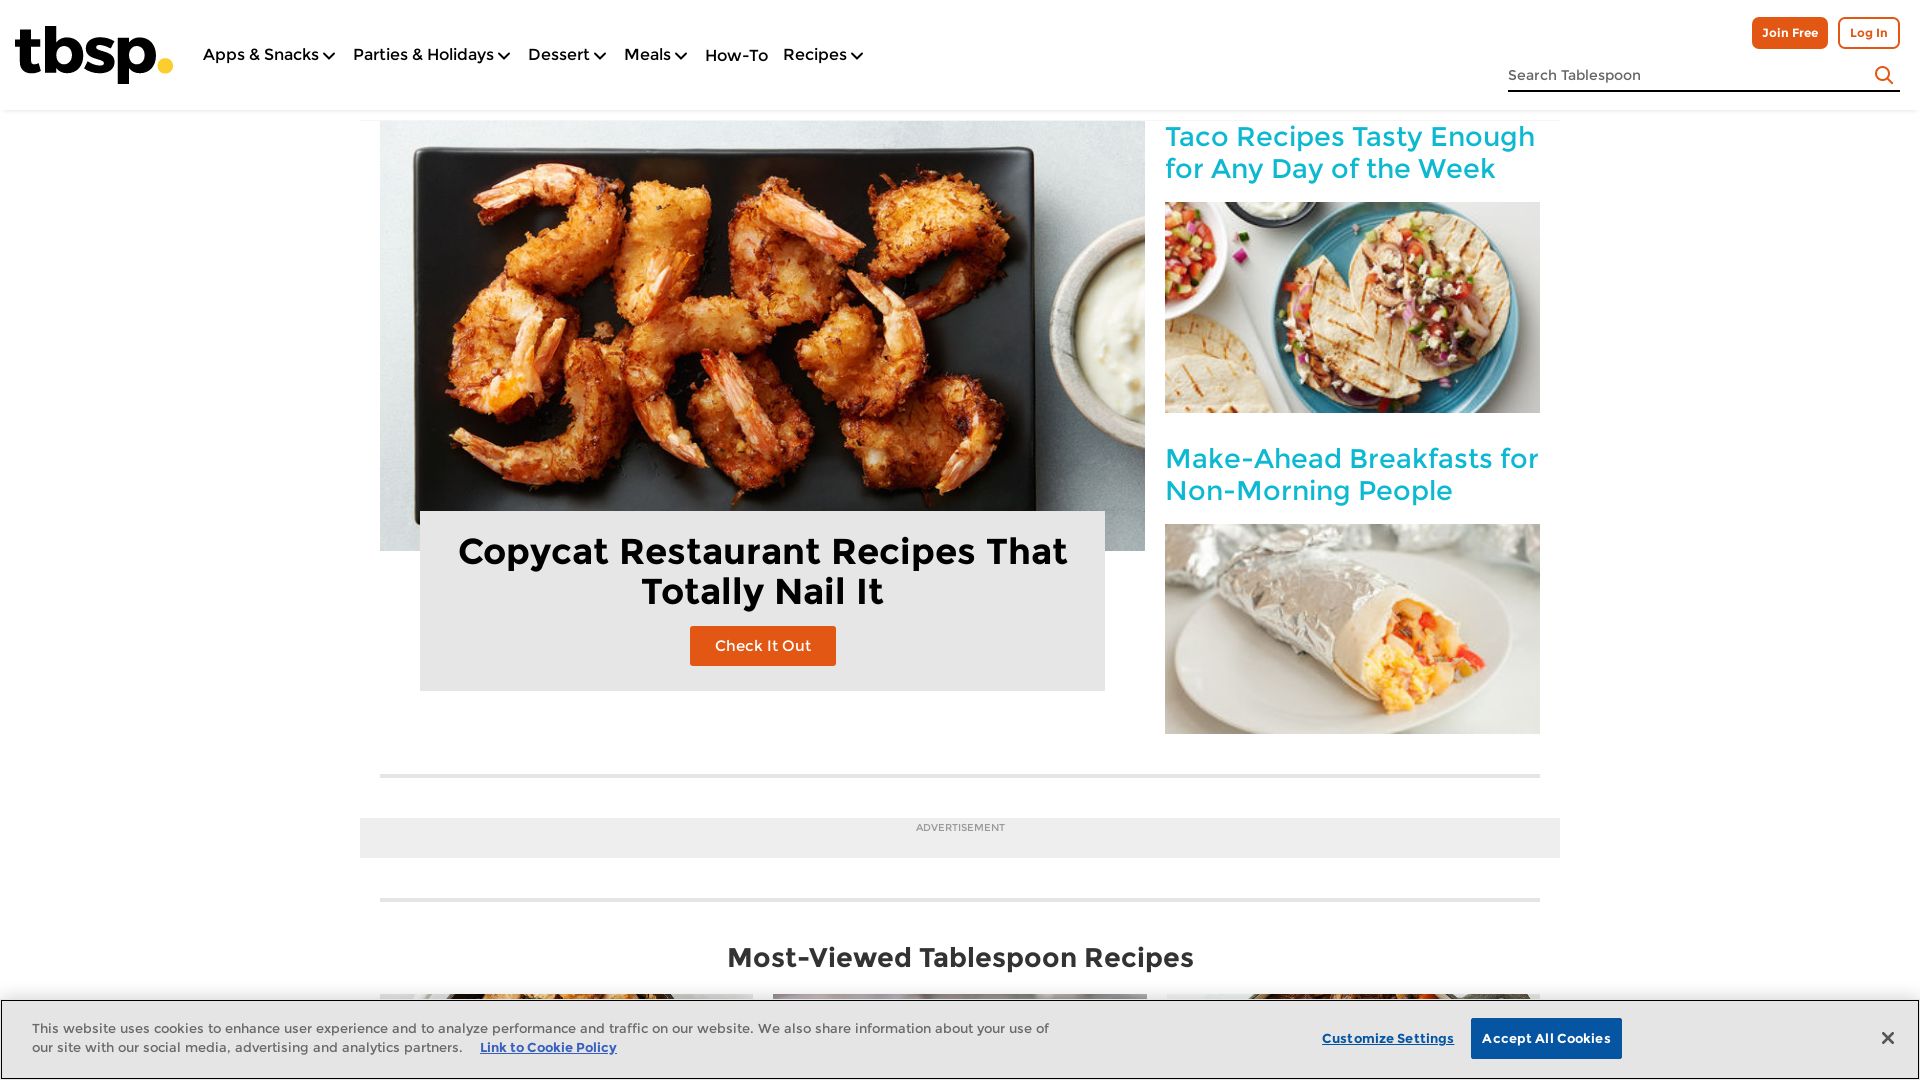 网站状态 tablespoon.com 是  在线的